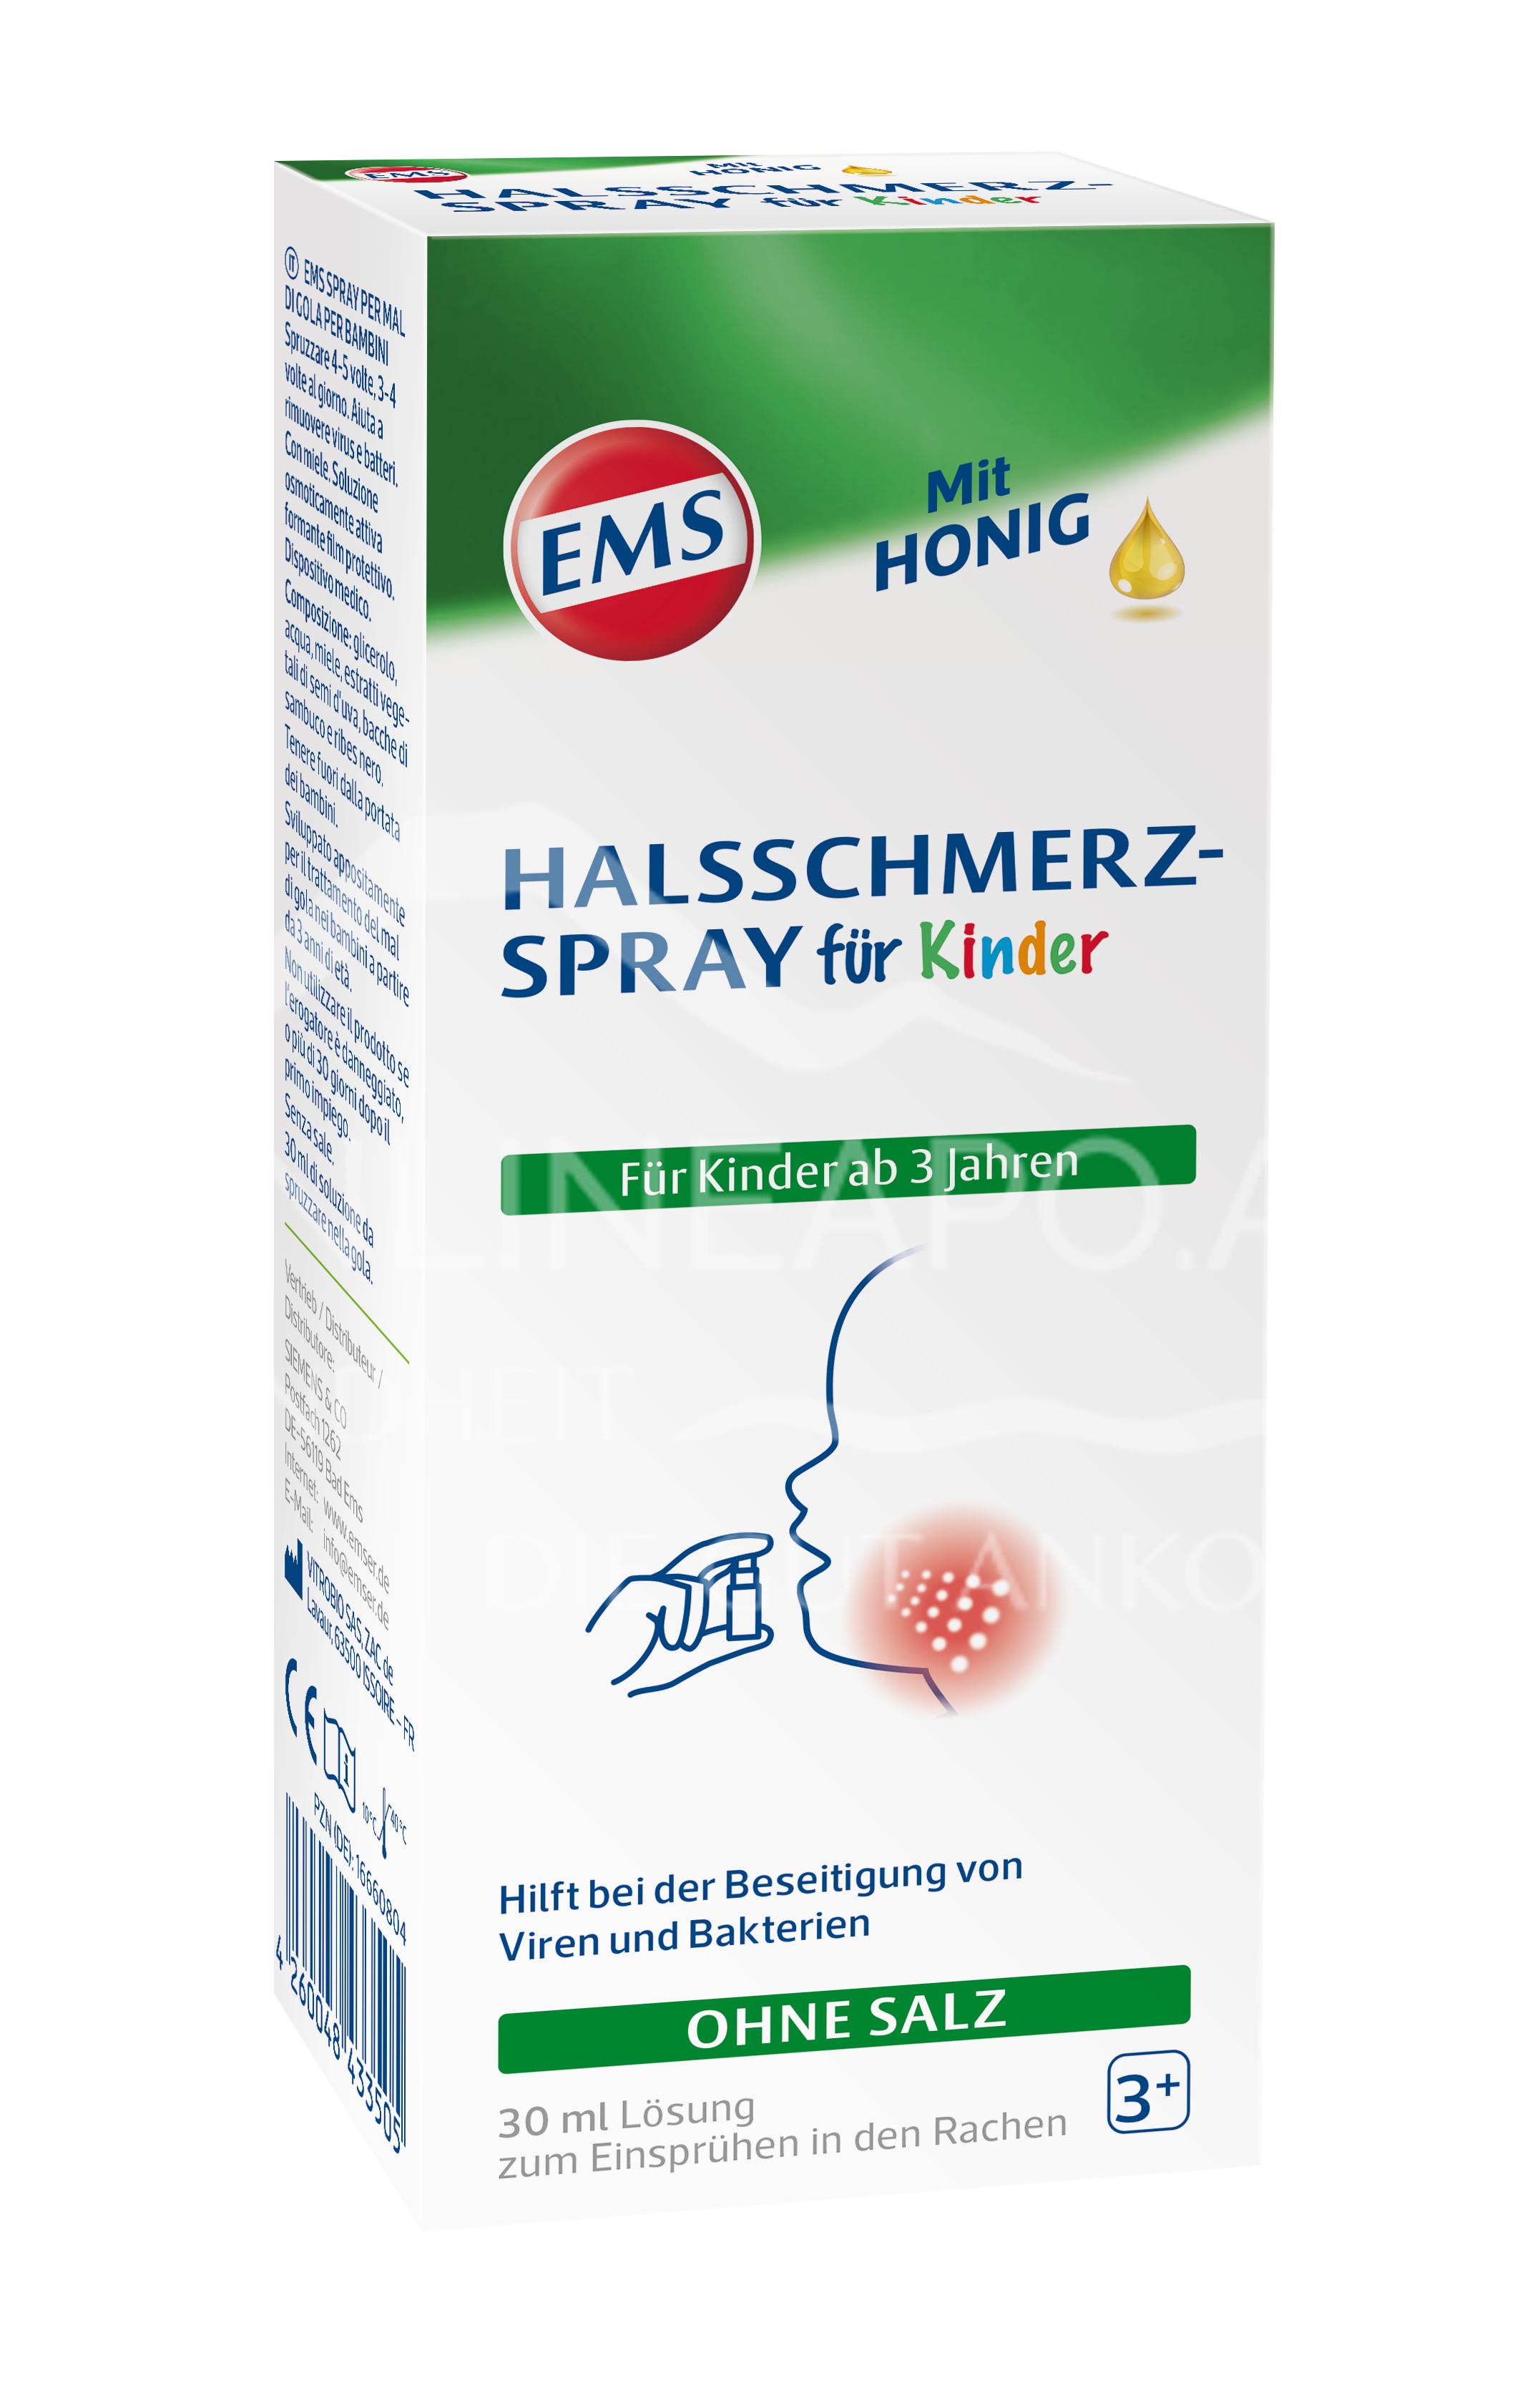 EMS Halsschmerz-Spray für Kinder mit Honig